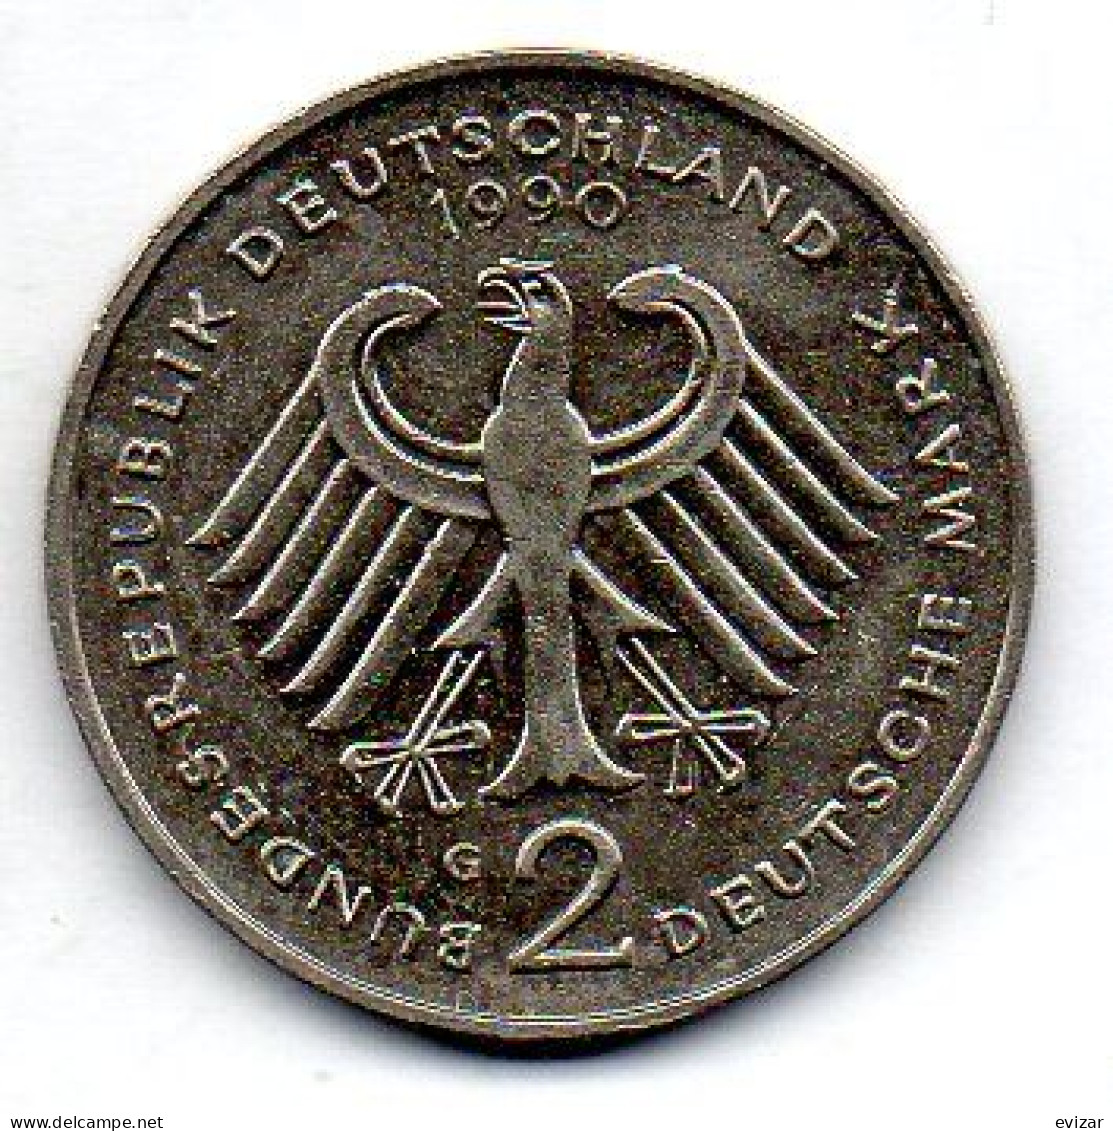 GERMANY - FEDERAL REPUBLIC, 2 Mark, Copper-Nickel, Year 1990-G, KM # 175 - 2 Marcos